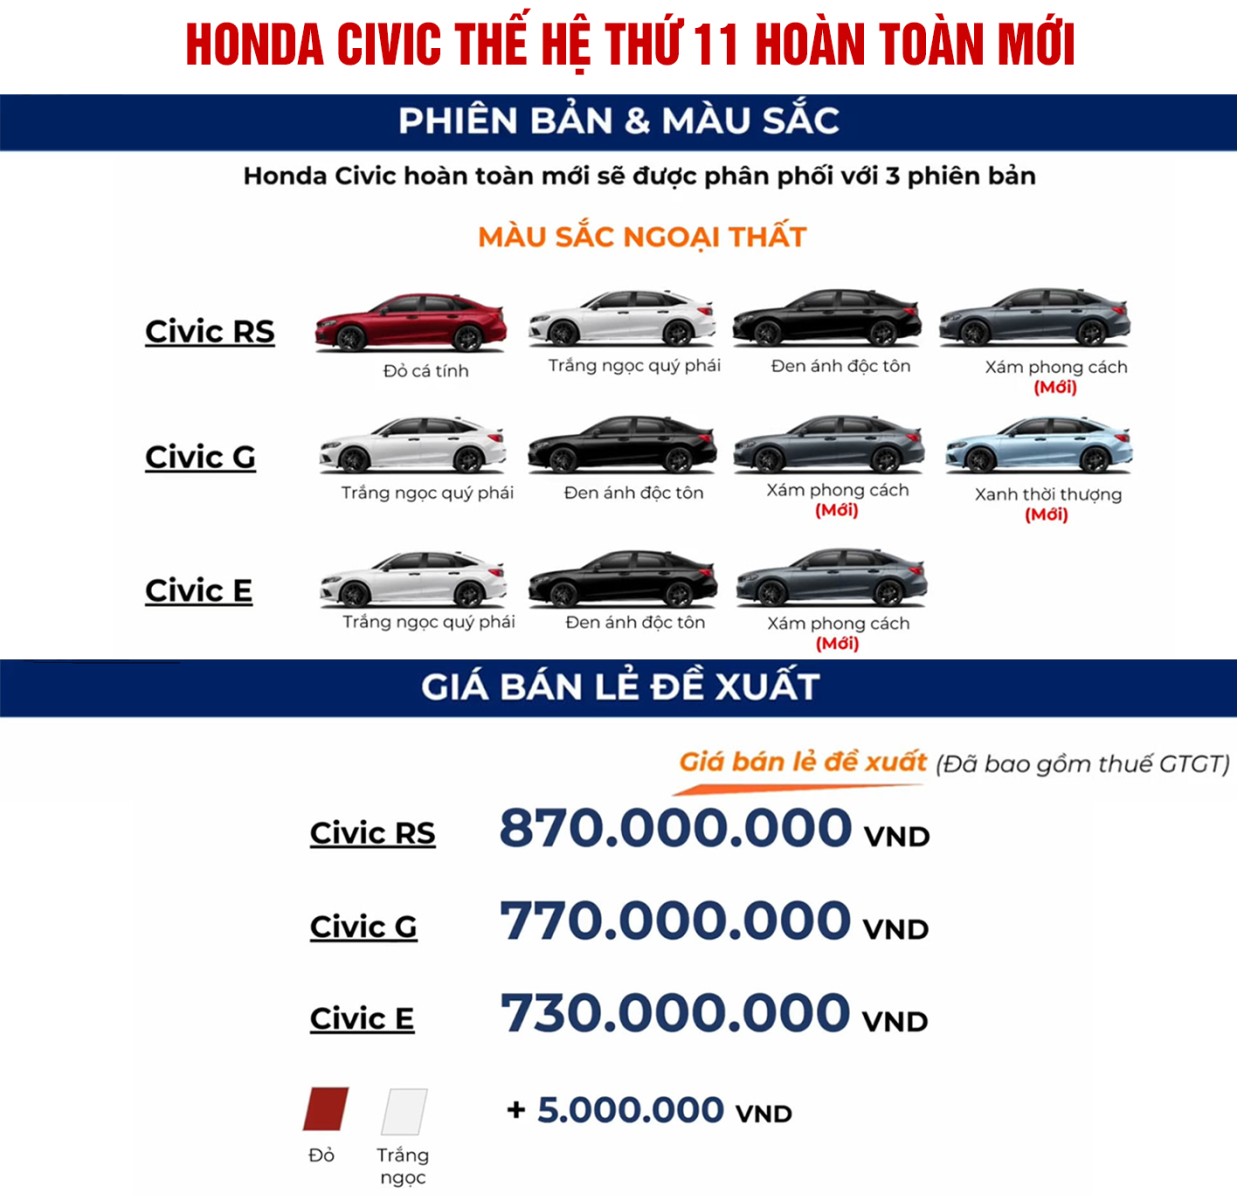 Phiên bản, màu sắc và giá bán lẻ của Honda Civic 2022